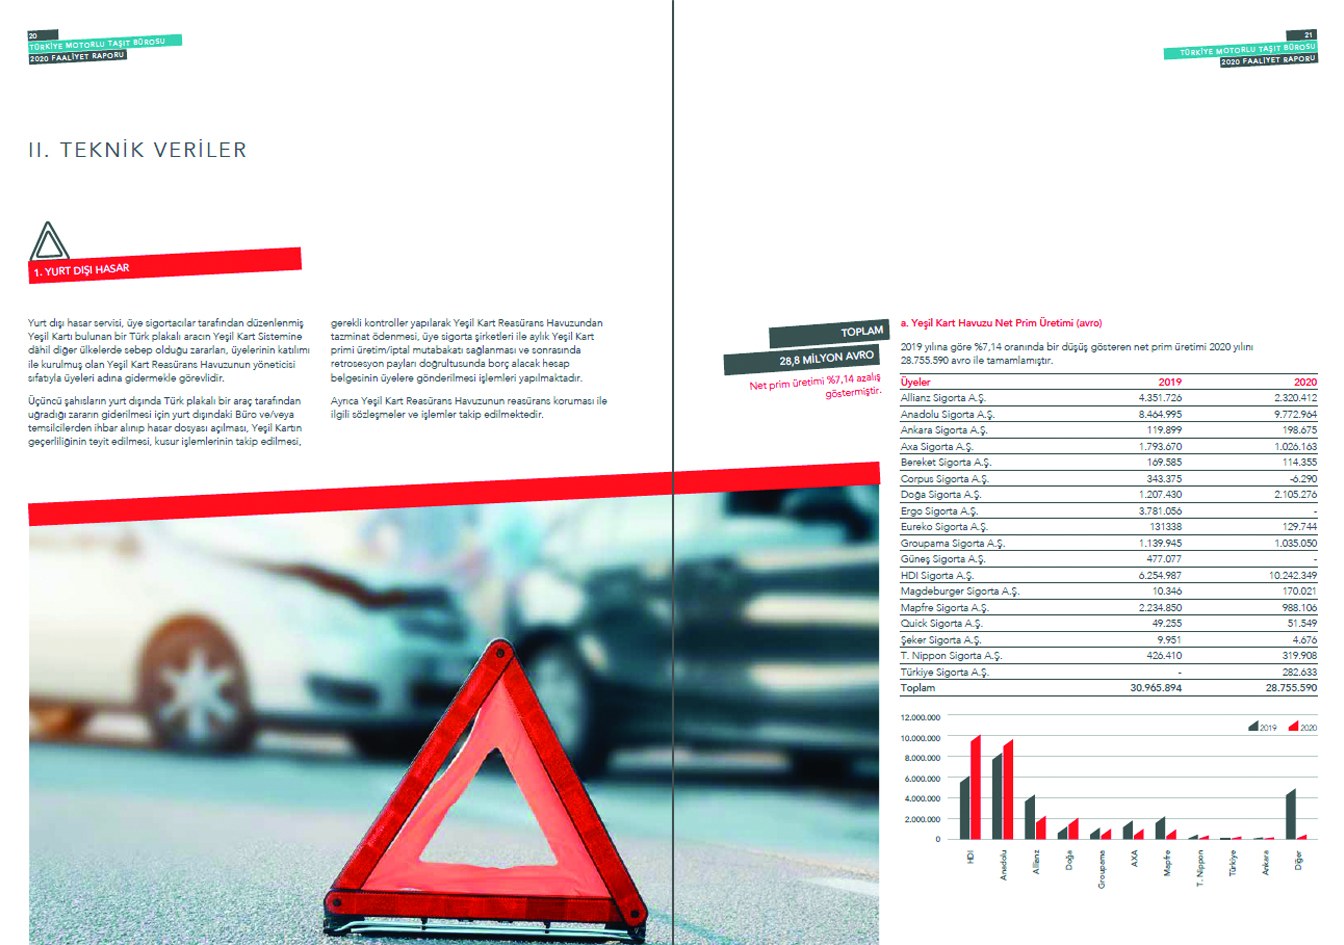 TÜRKİYE MOTORLU TAŞITLAR BİRLİĞİ / 2020 Faaliyet Raporu / 2020 Annual Report